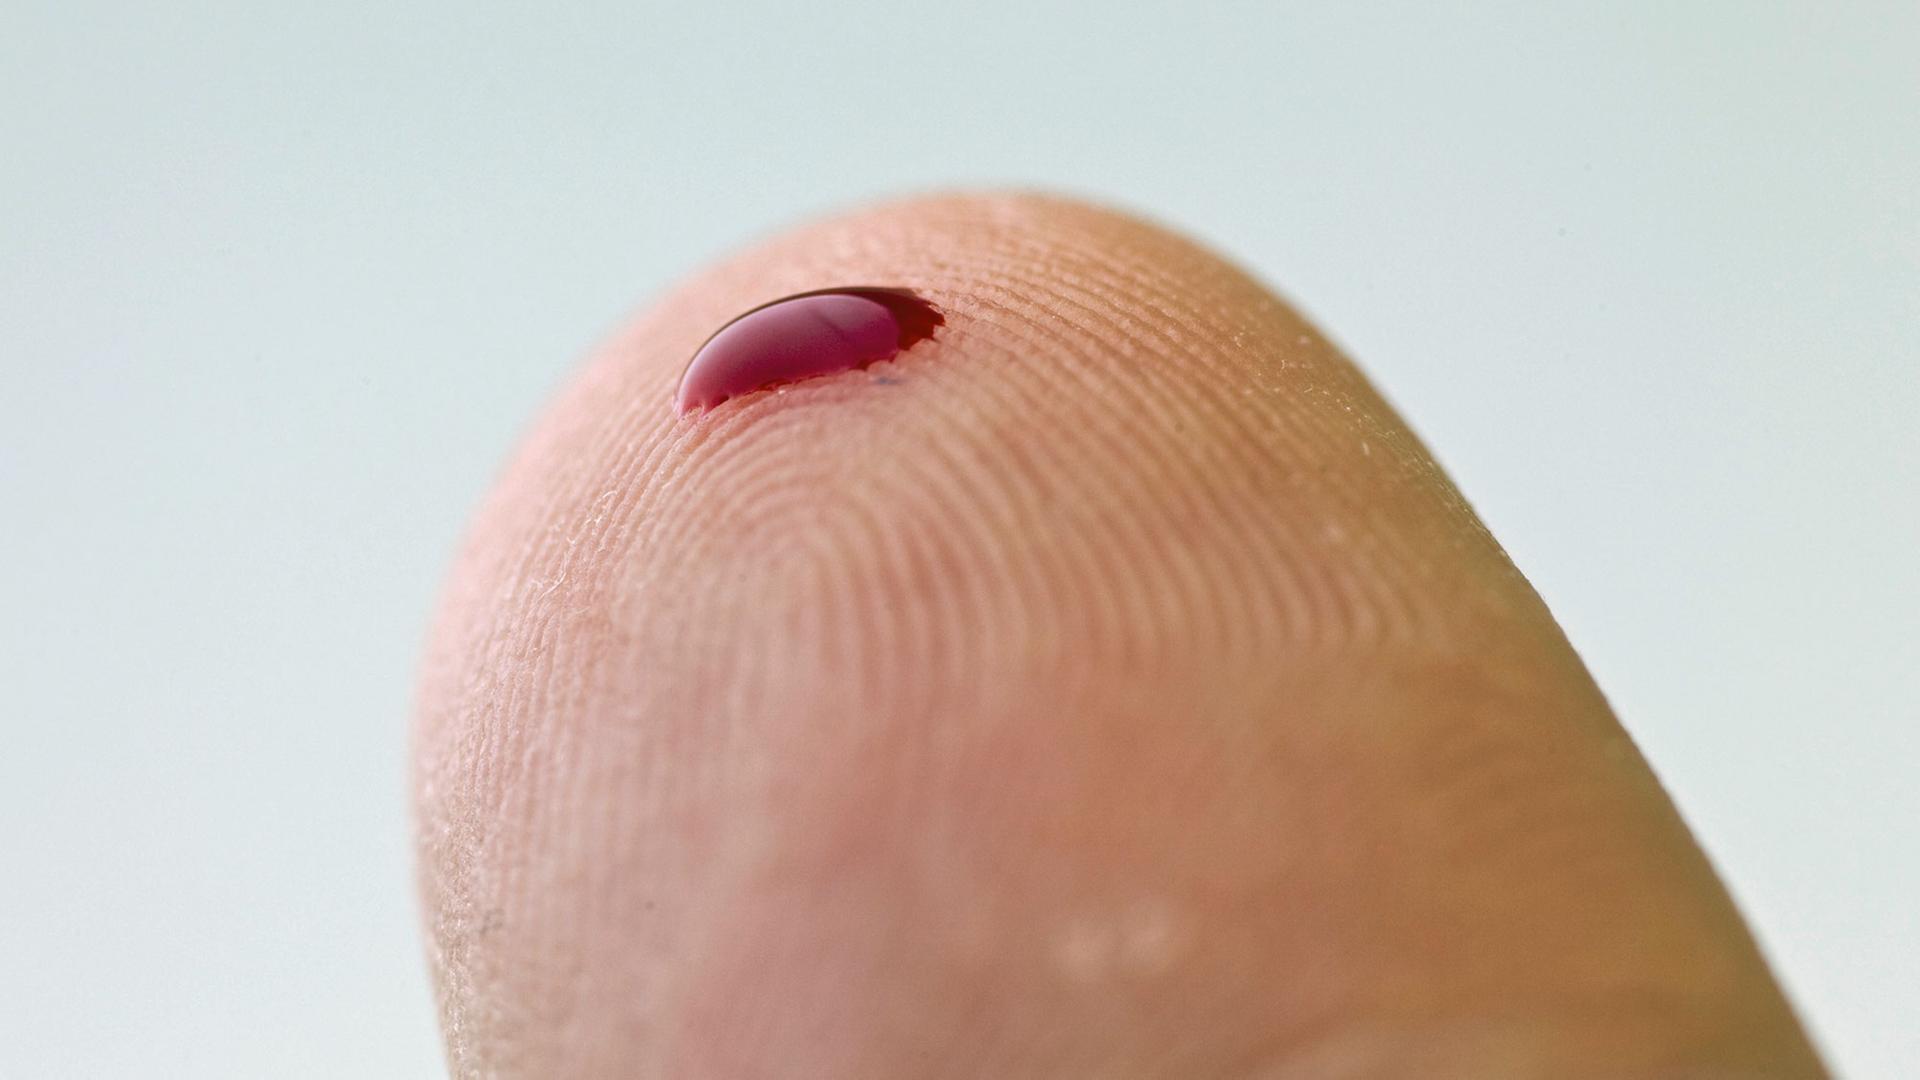 Ein kleiner Blutstropfen auf einem Finger. Mithilfe eines solchen Tropfens und eines Messgerätes können zum Beispiel an Diabetes erkrankte Menschen den Zuckergehalt des Blutes bestimmen.